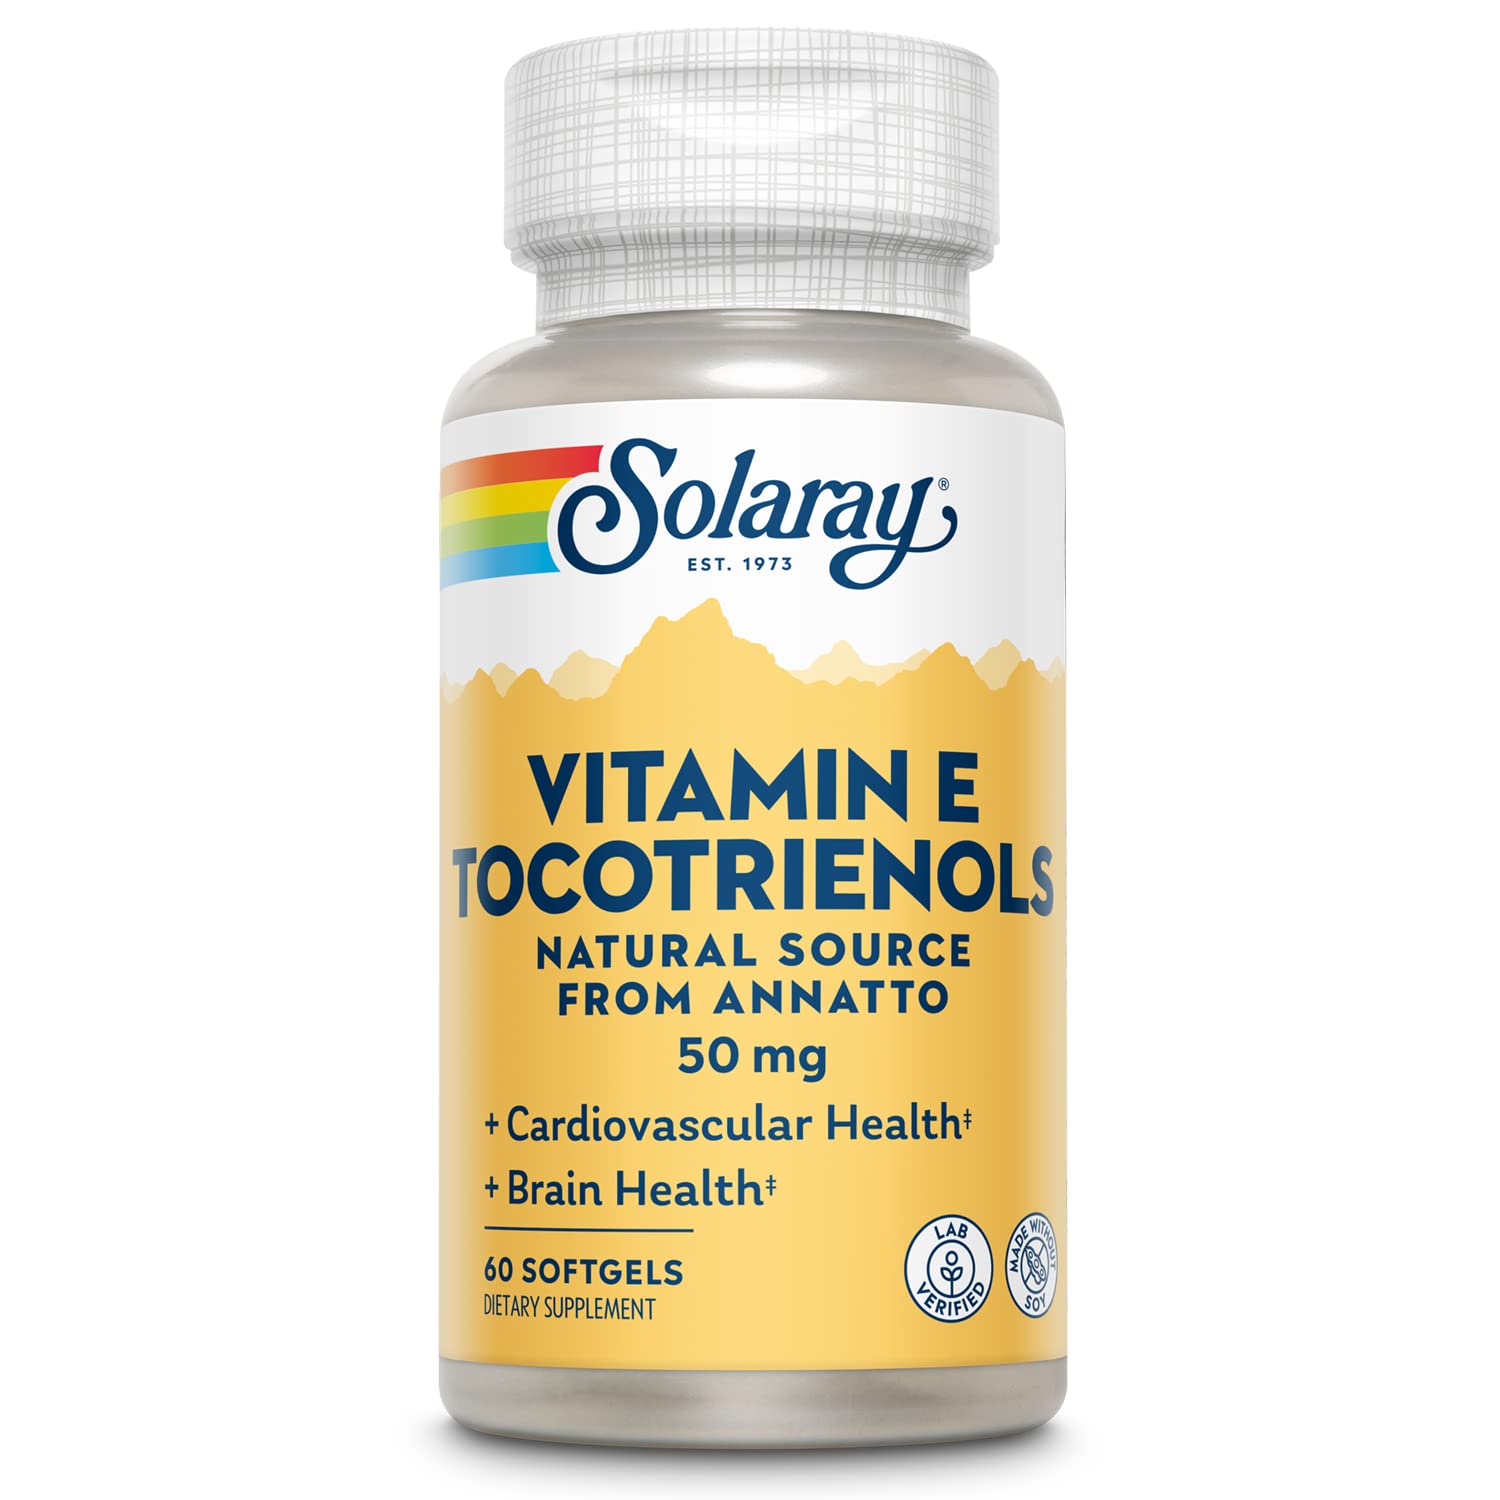 Solaray Vitamin E Tocotrienols 60ct Softgel